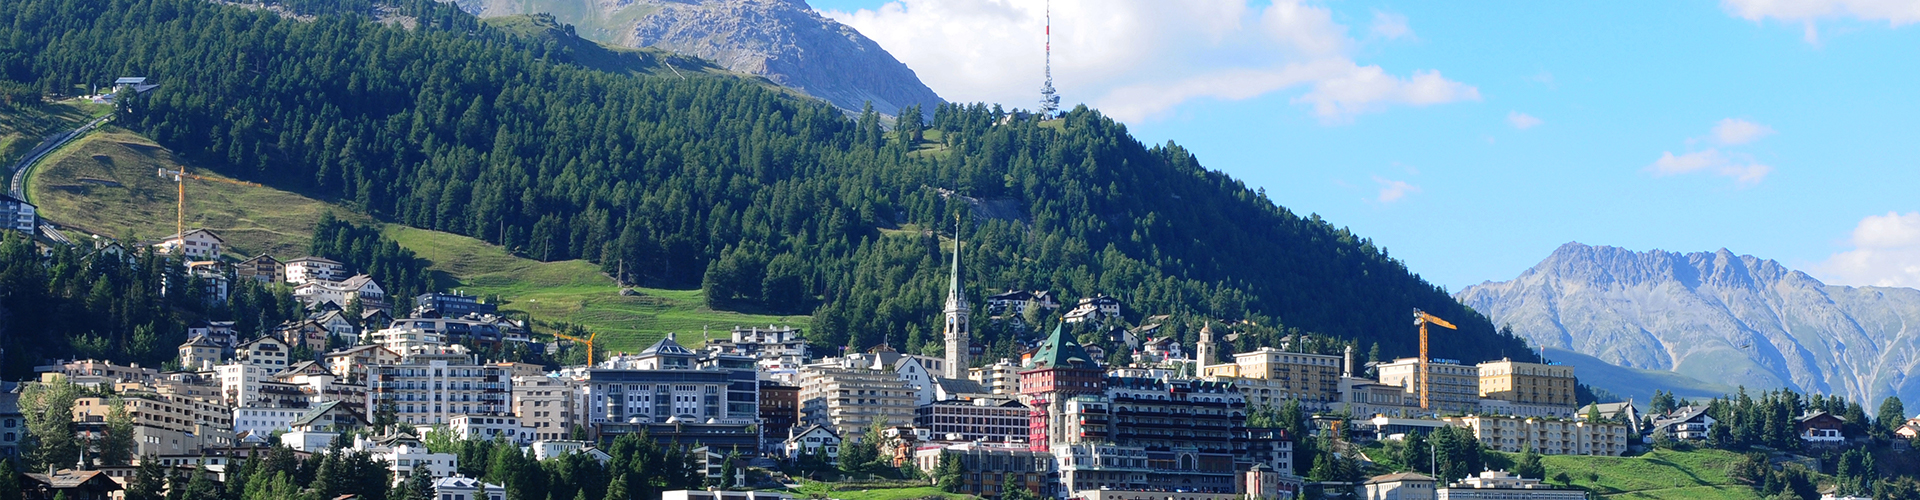 Milano - St. Moritz (INVERNALE)